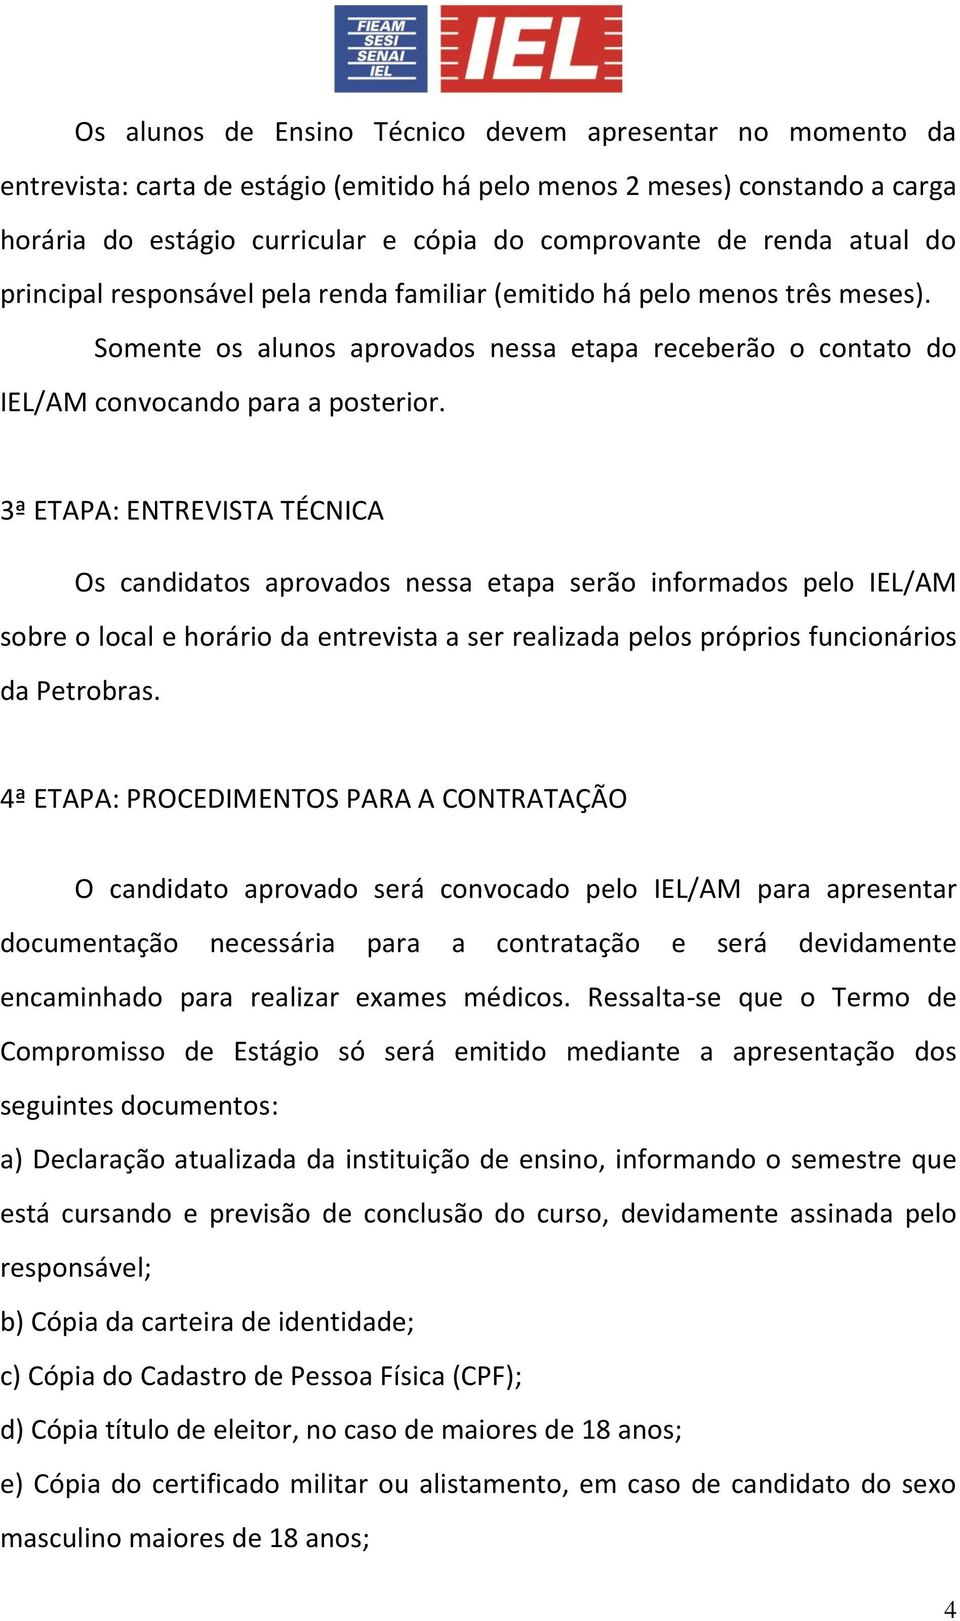 3ª ETAPA: ENTREVISTA TÉCNICA Os candidatos aprovados nessa etapa serão informados pelo IEL/AM sobre o local e horário da entrevista a ser realizada pelos próprios funcionários da Petrobras.